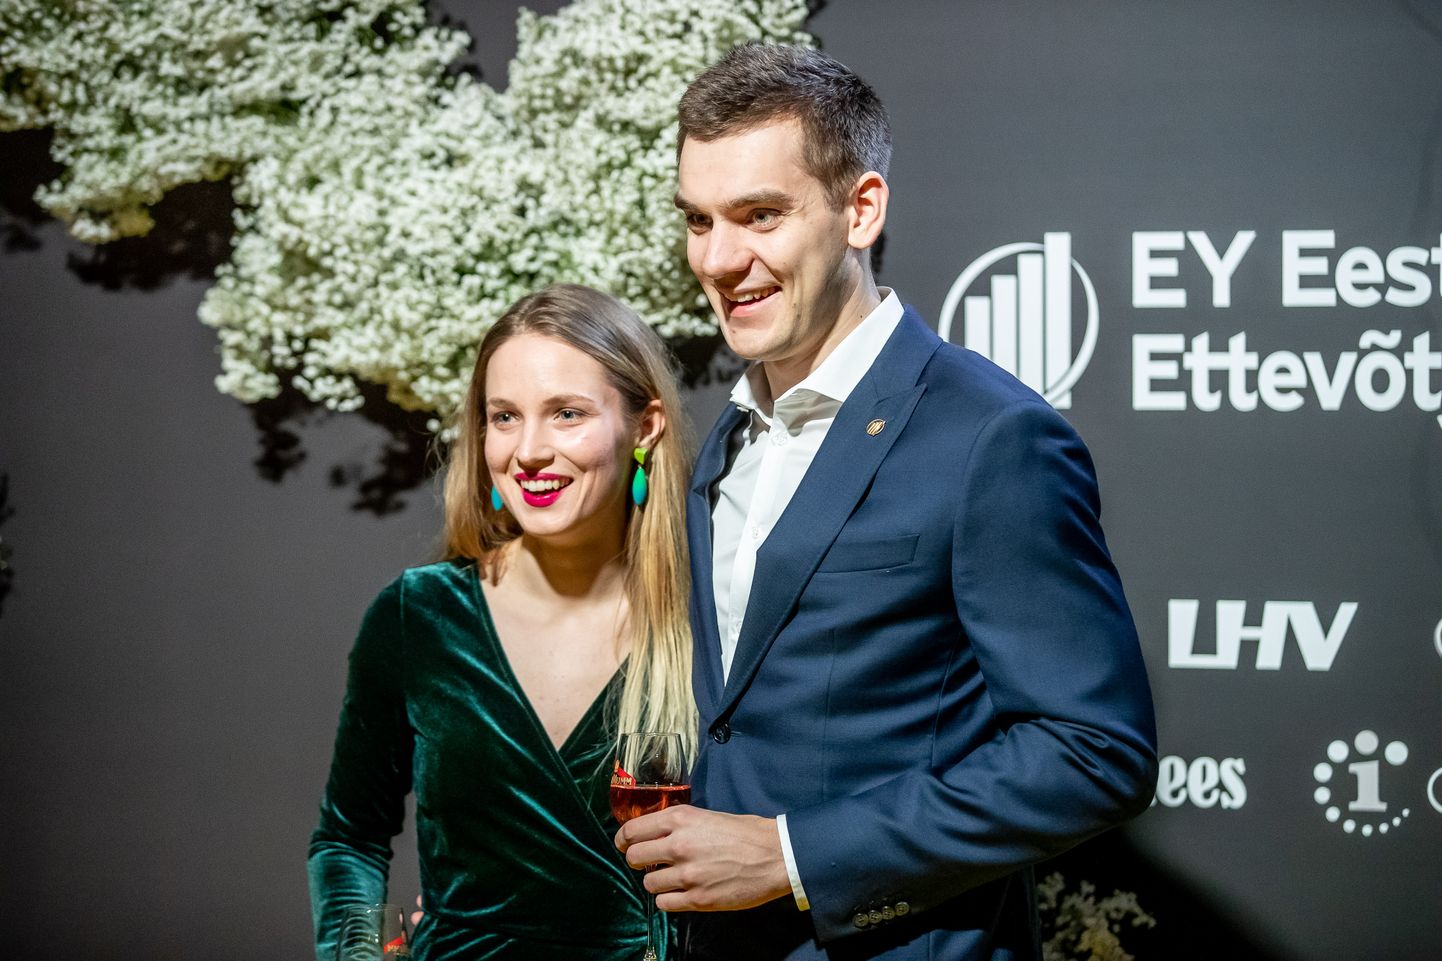 EY Eesti aasta ettevõtja 2019, Markus Villig ja Iida Kaisa Urm